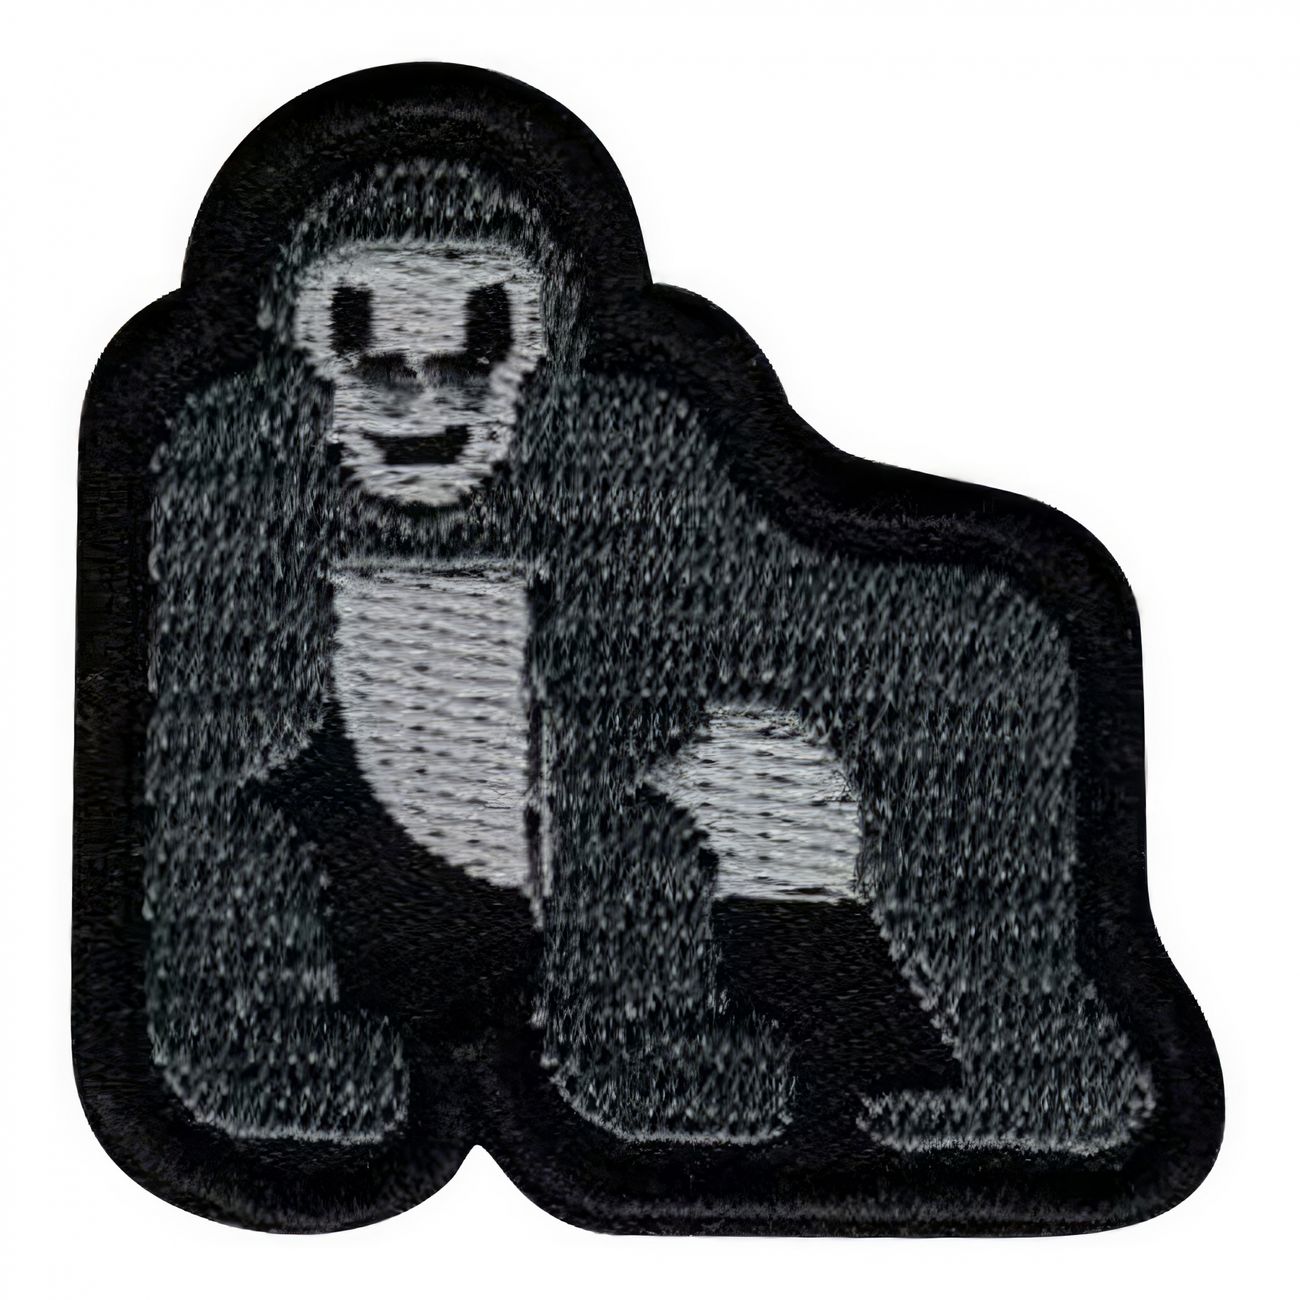 tygmarke-emoji-gorilla-94122-1